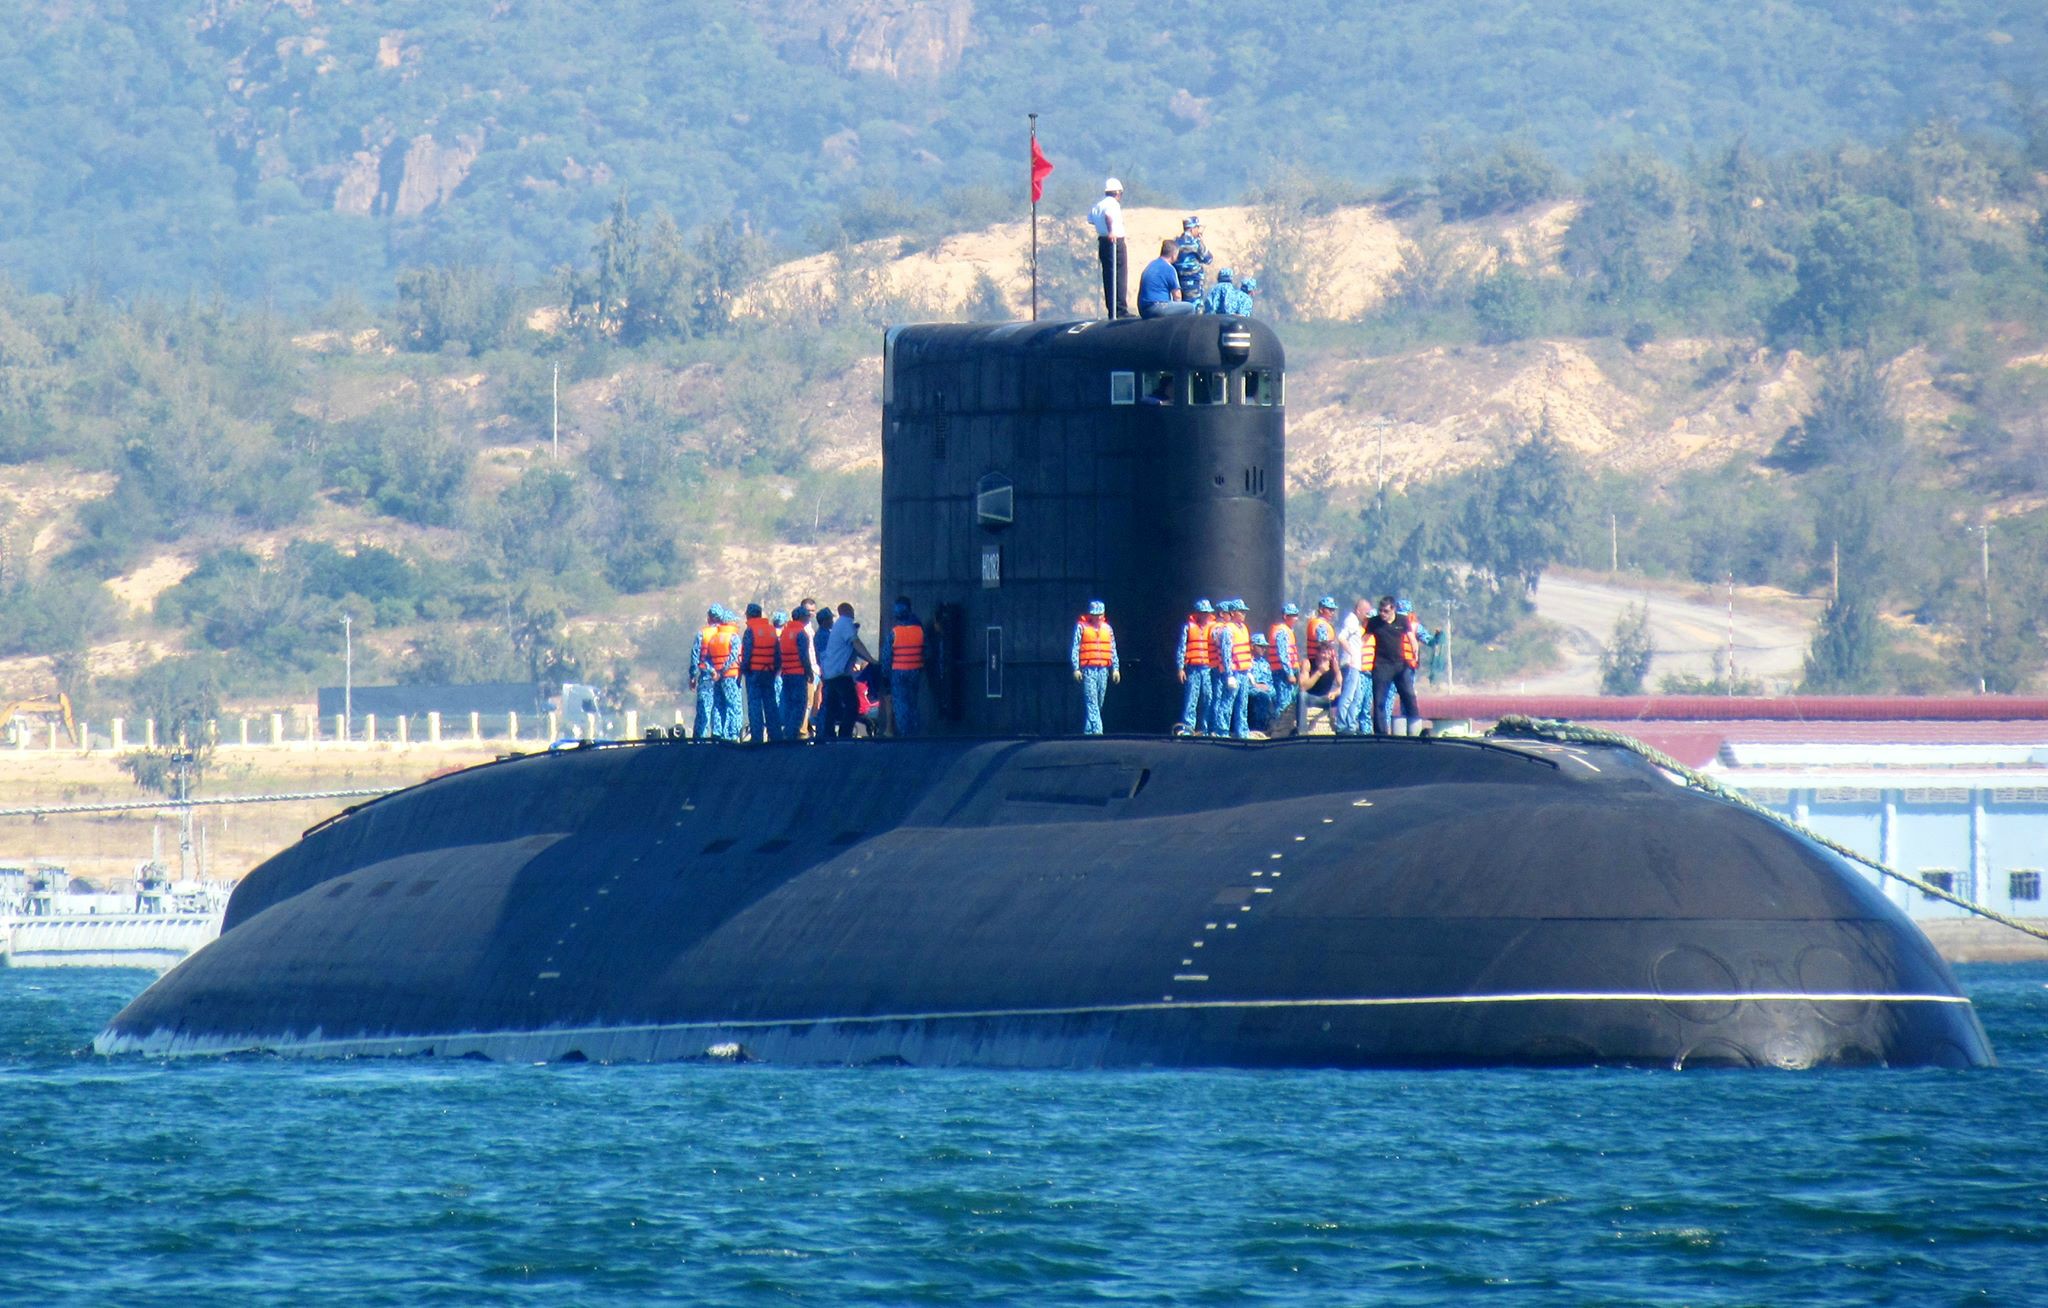 Пл c. Подводная лодка 636 Варшавянка. Подводных лодок проекта 636 «Варшавянка». Проект 636.3. Подводная лодка проекта 877 Варшавянка.